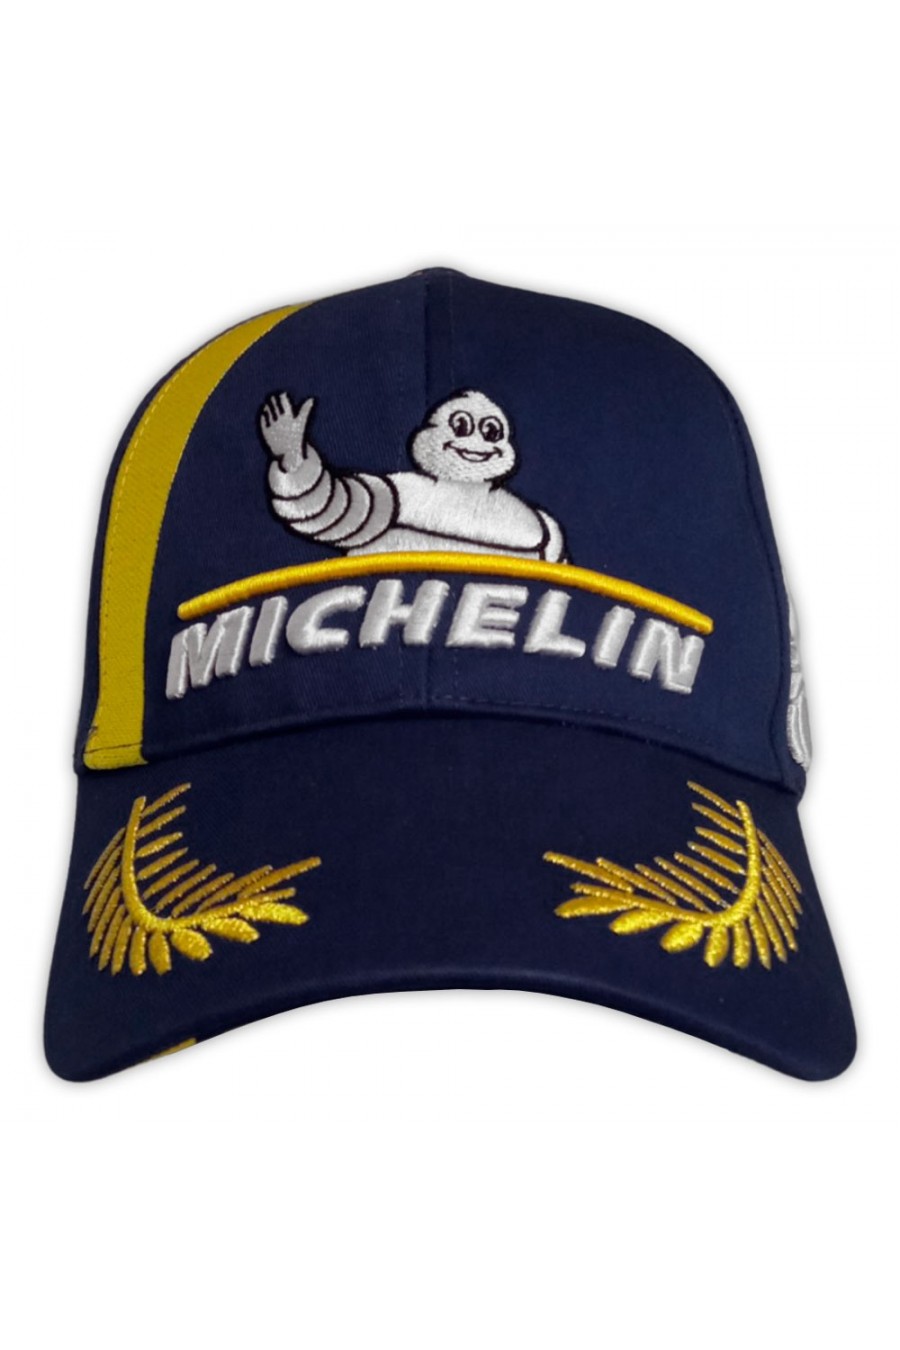 Gorra Michelin Motorsport Podio